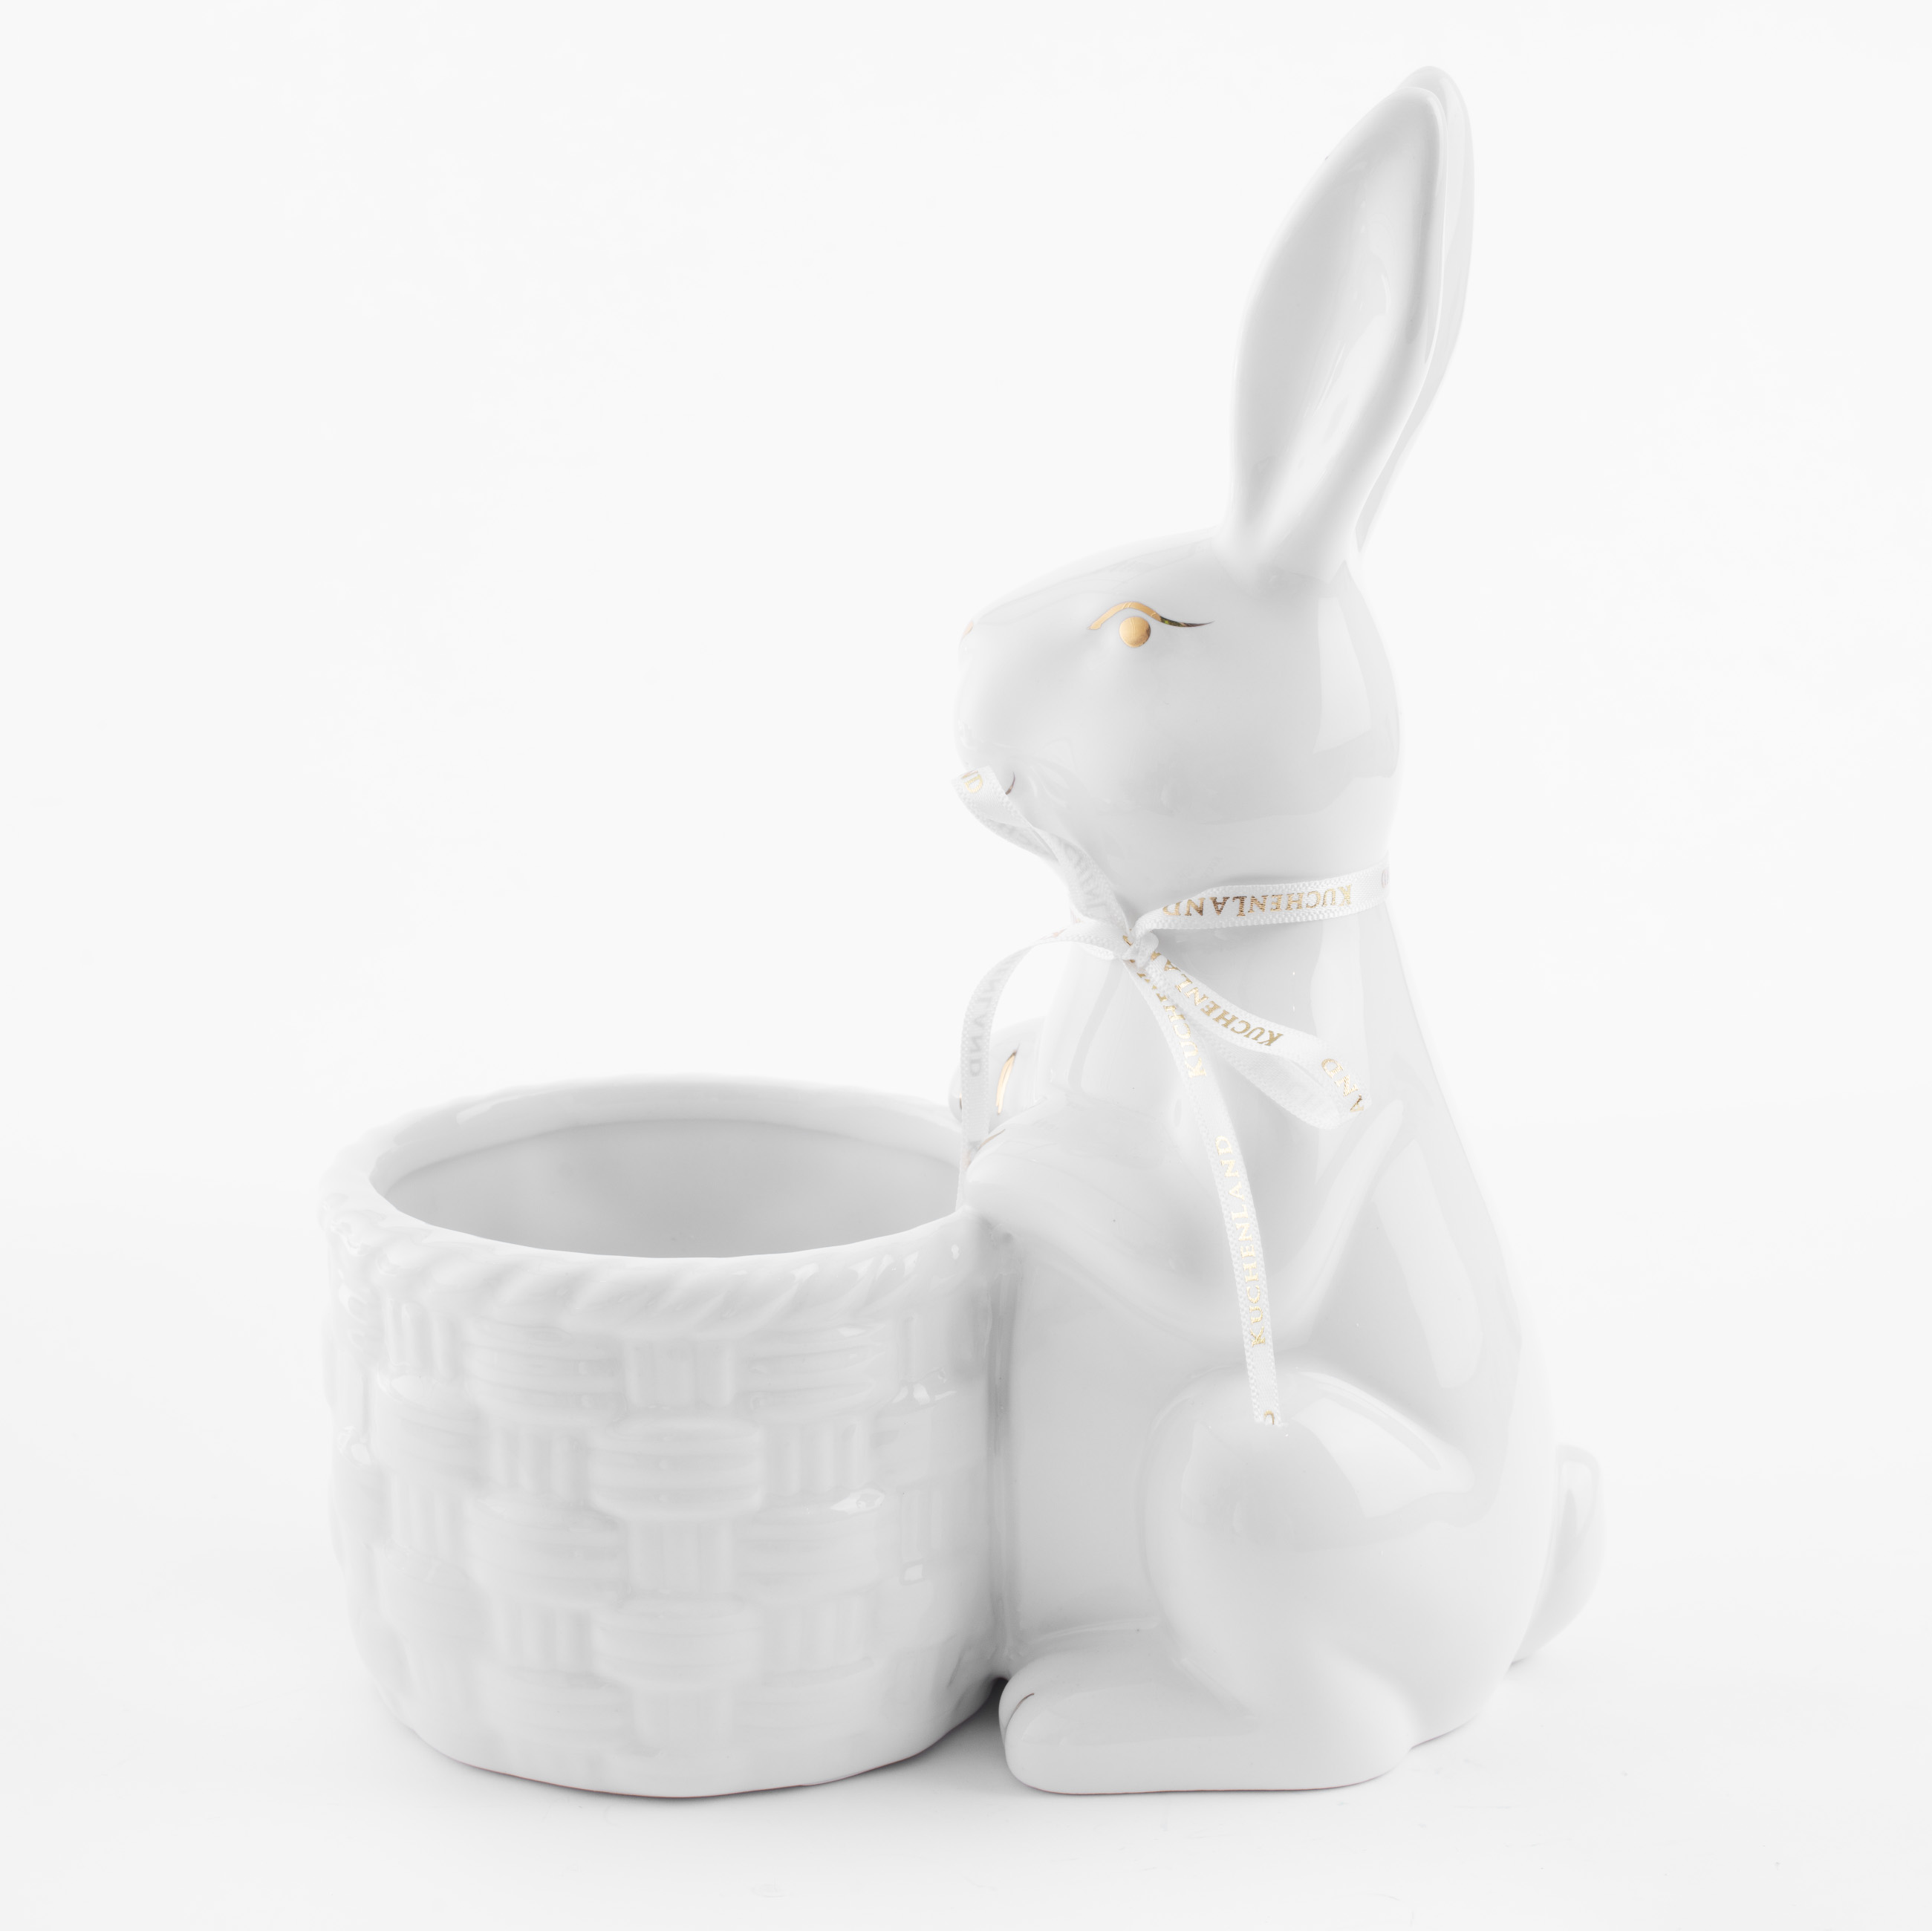 Конфетница, 18x23 см, керамика, бело-золотистая, Кролик с плетенной корзиной, Easter gold изображение № 2